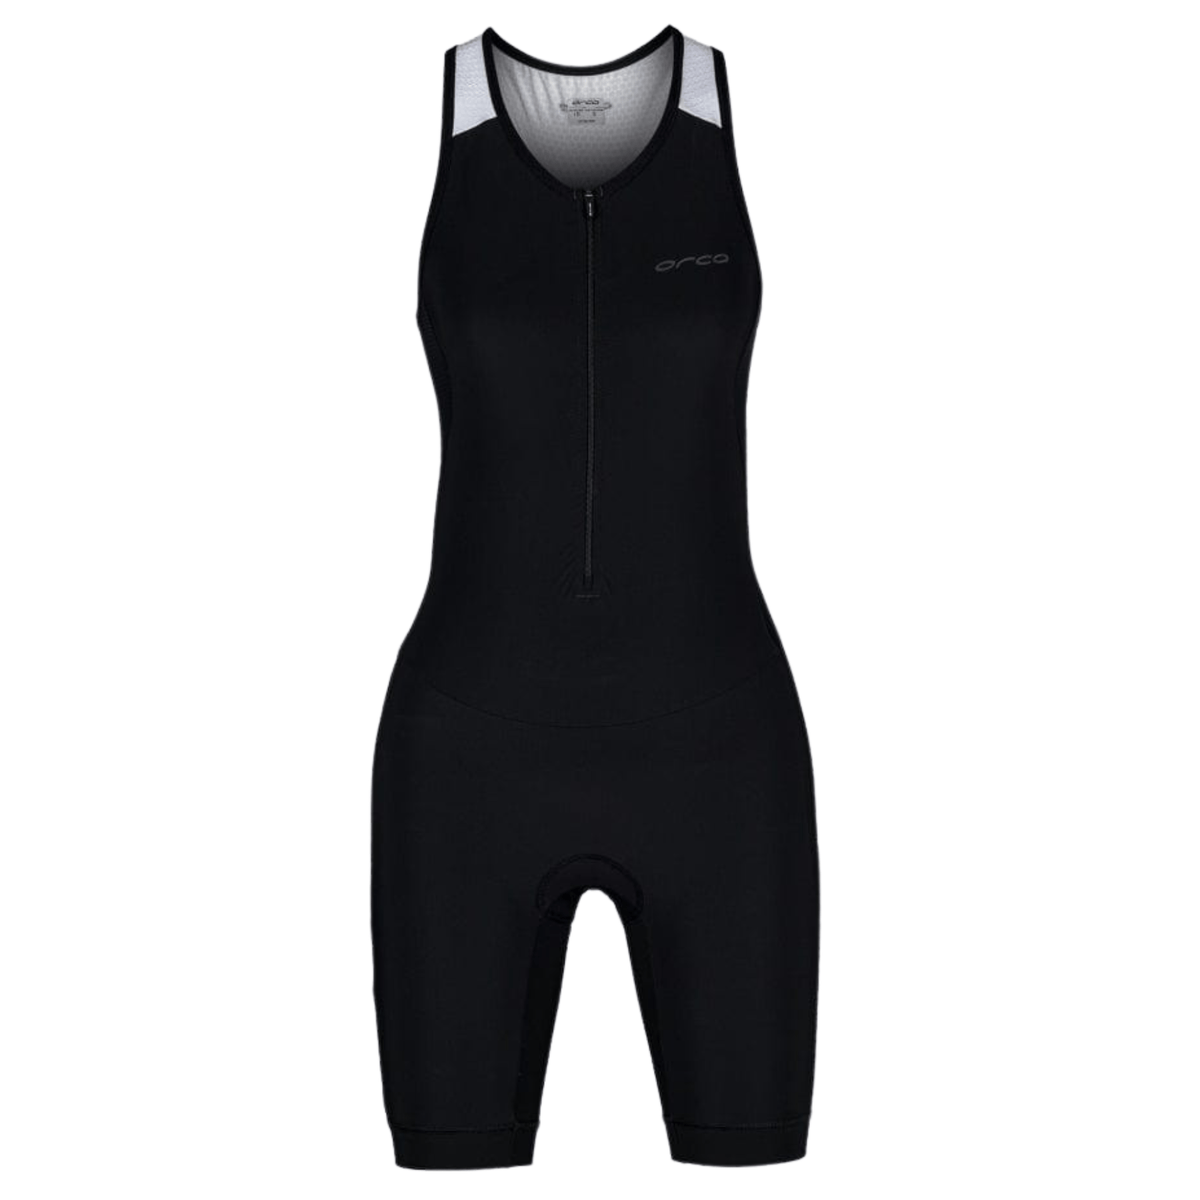 Athlex Race Suit Womens Trisuit – Oz Backcountry